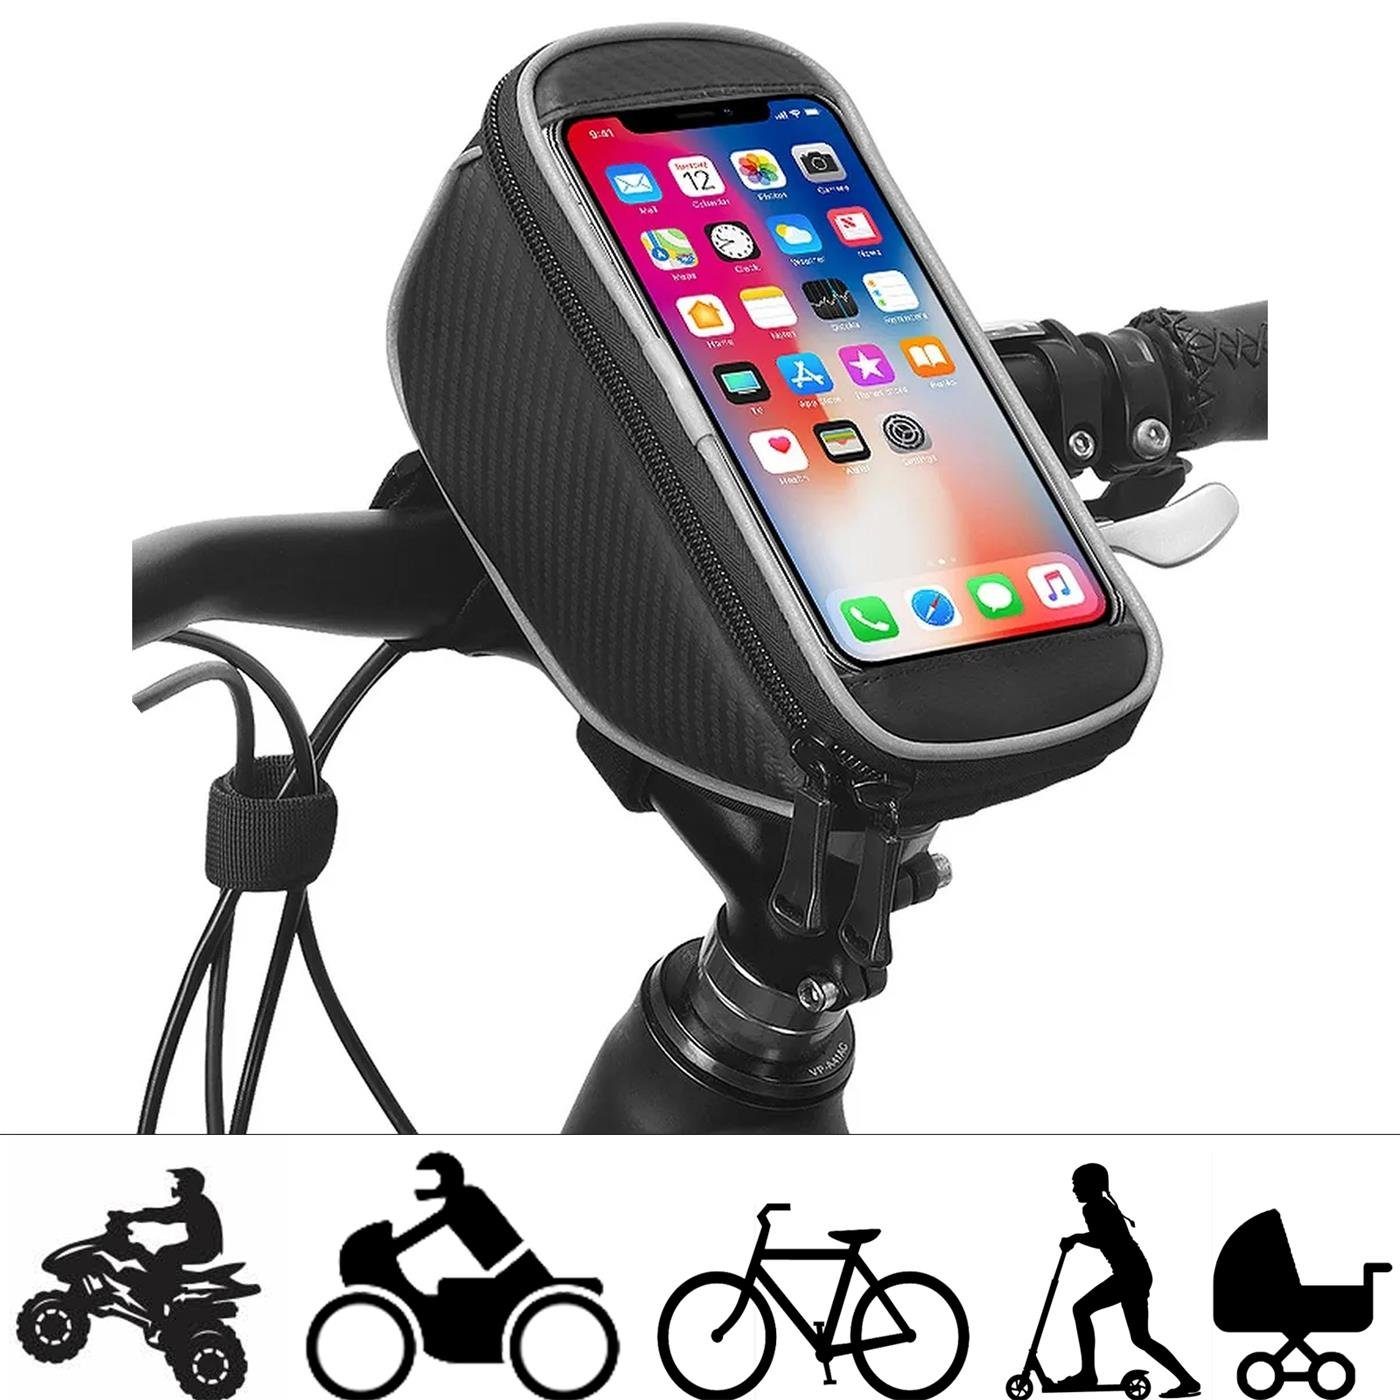 https://i.otto.de/i/otto/feda80f7-367f-580a-bcc2-e925ce154dbb/coolgadget-sahoo-fahrrad-lenker-handy-halterung-smartphone-handy-halter-fuer-fahrrad-bike-roller-scooter.jpg?$formatz$